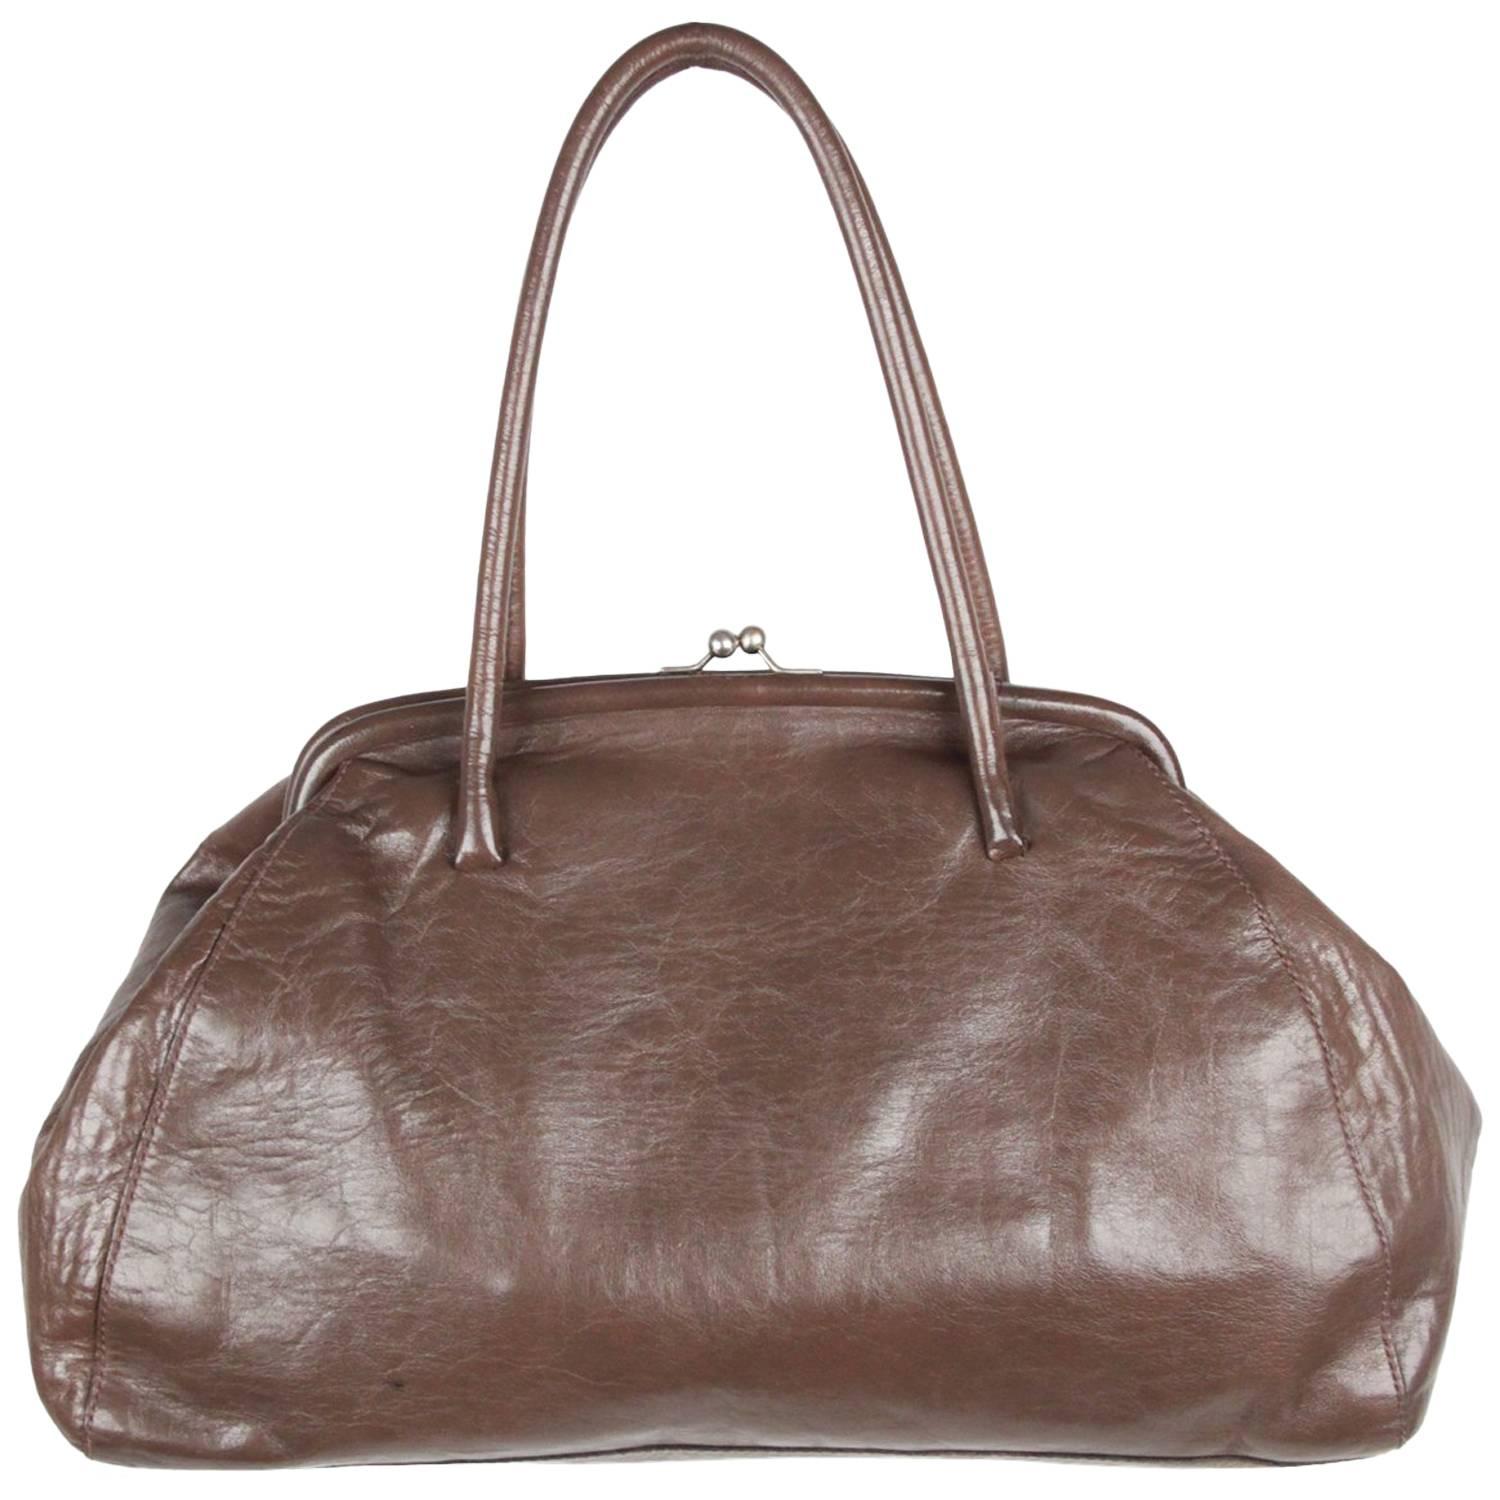 MIU MIU Taupe Leather KISS LOCK TOTE Shoulder Bag